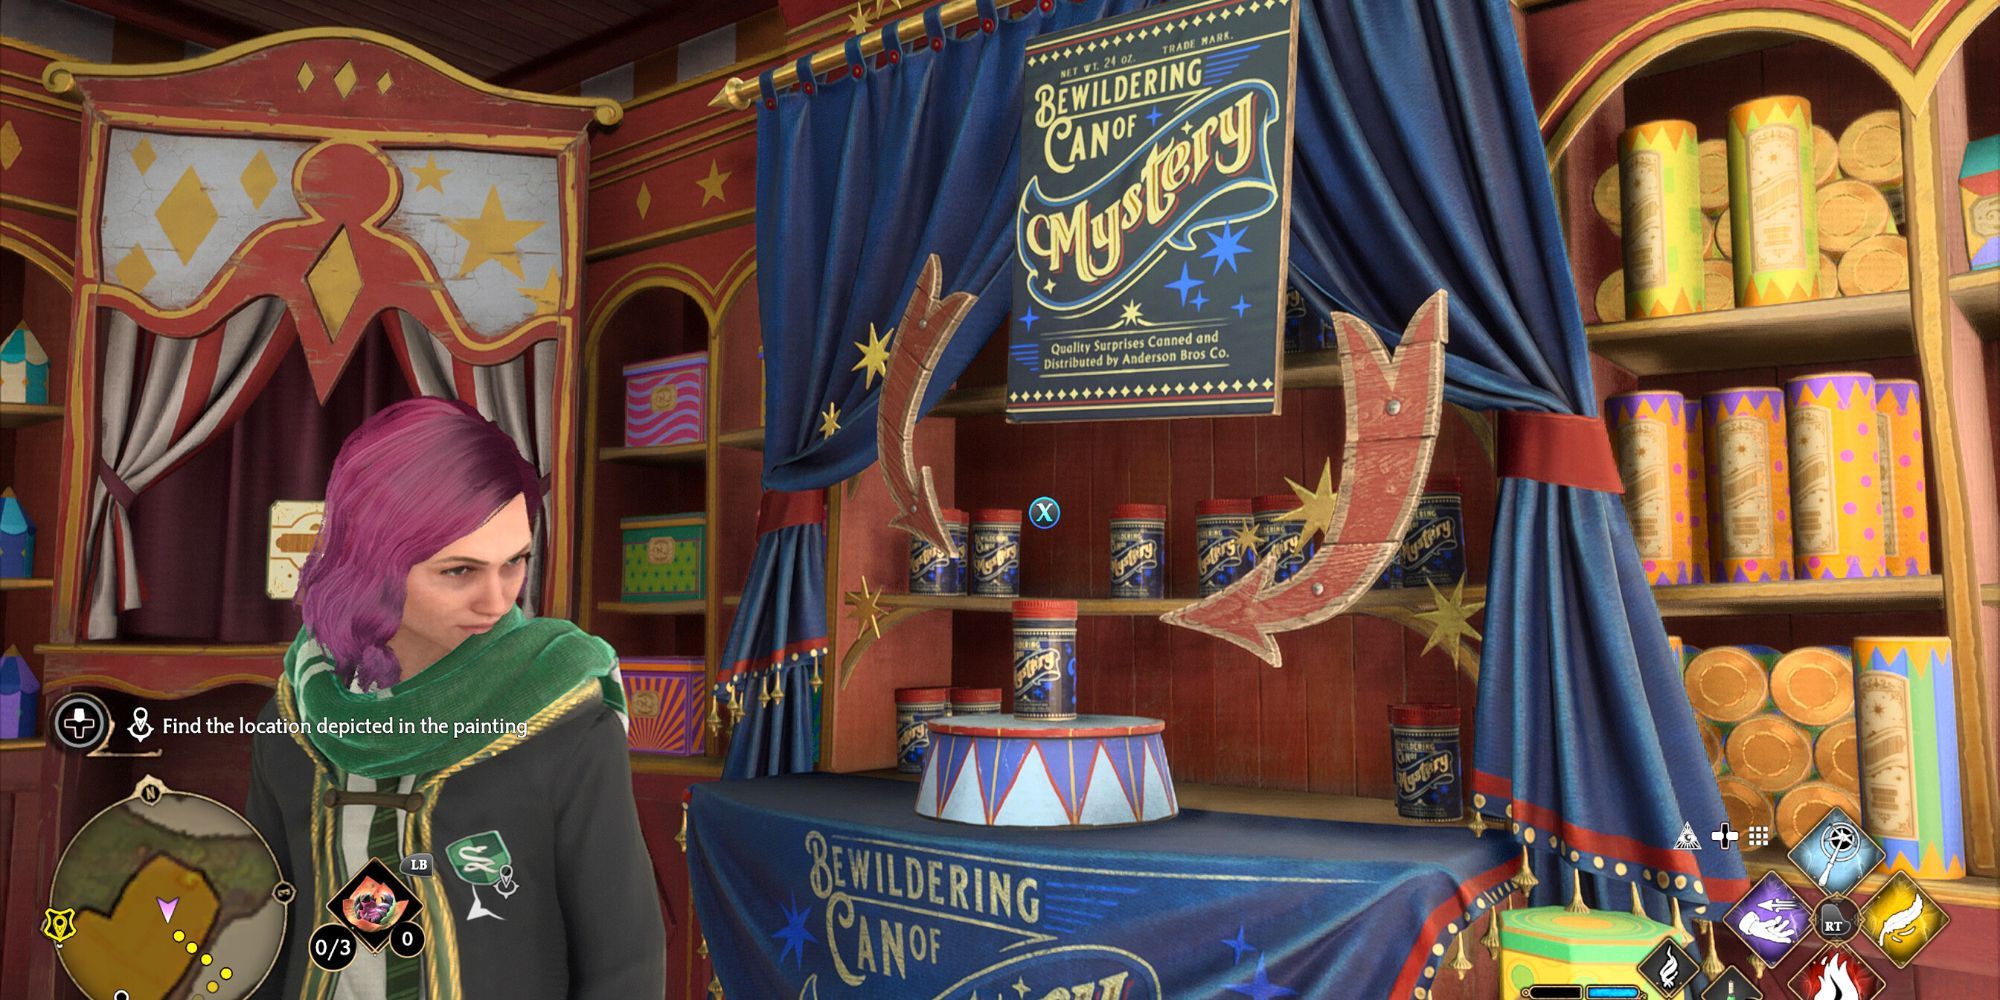 Bewildering Can of Mystery in Zonko's Joke Shop in Hogwarts Legacy